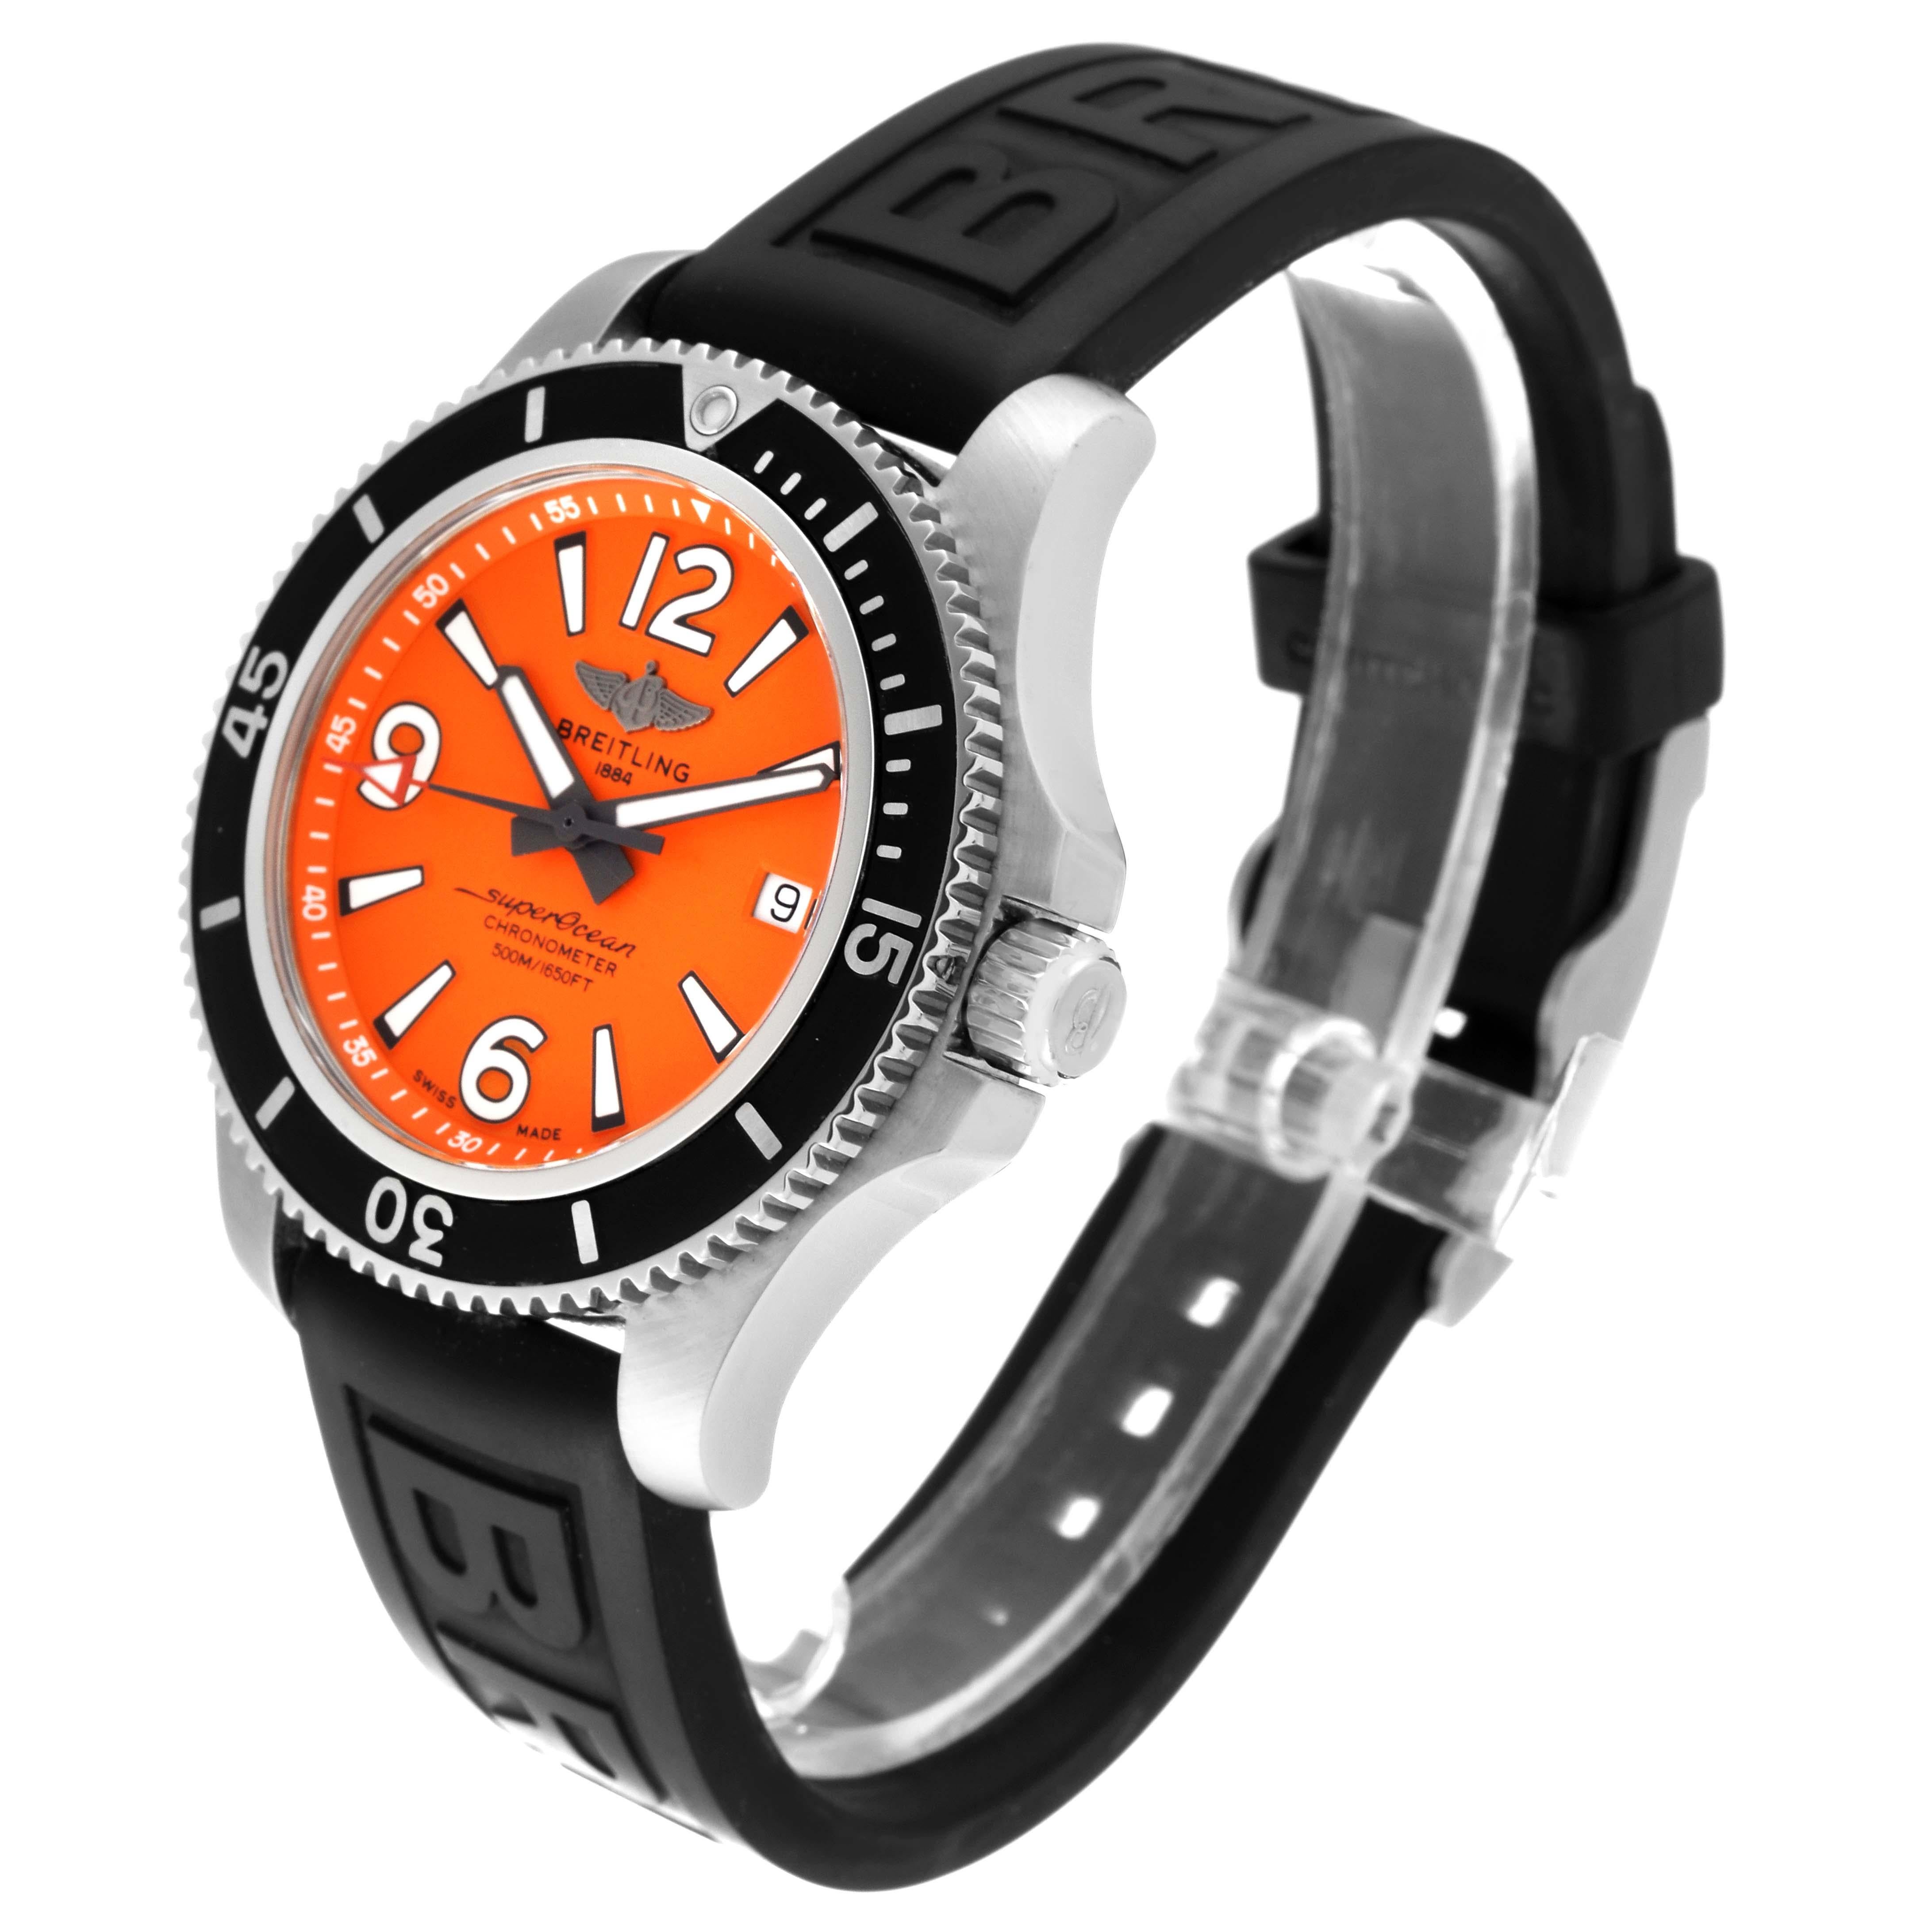 Breitling Superocean 42 Orange Zifferblatt Stahl Herrenuhr A17366 Box Card. Automatisches Uhrwerk mit Selbstaufzug. Gehäuse aus Edelstahl mit einem Durchmesser von 42.0 mm. Verschraubte Krone aus Edelstahl. Schwarze, einseitig drehbare Lünette aus